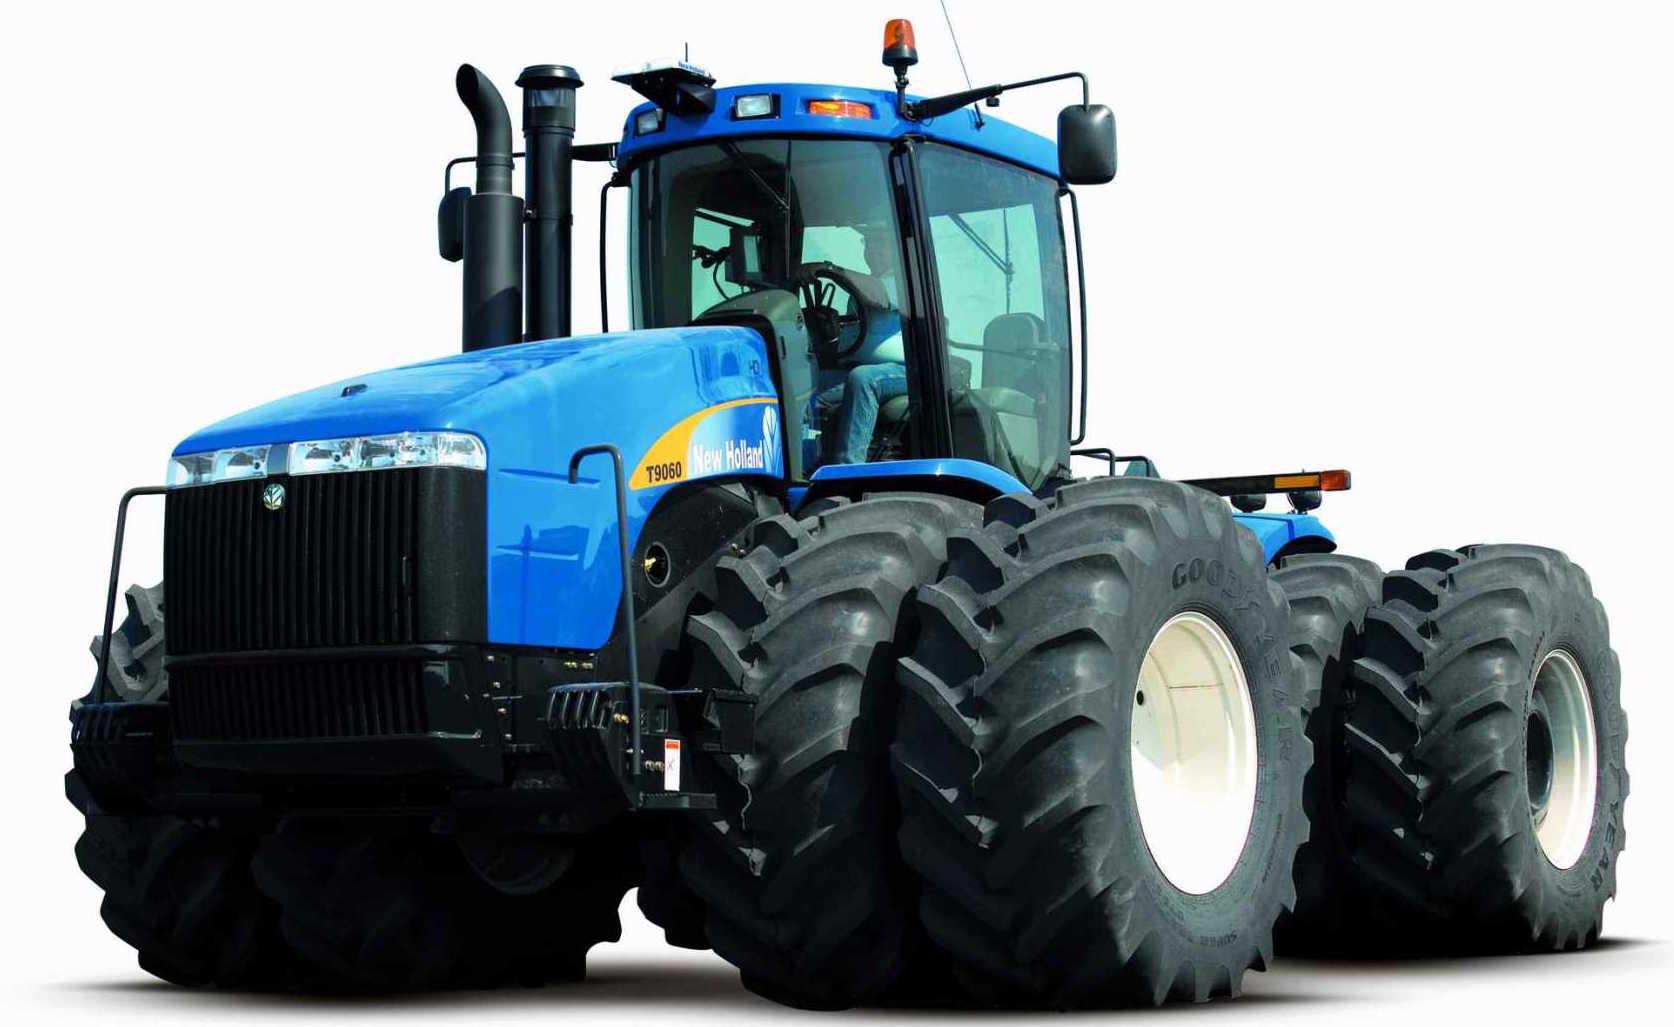 Hochwertige Tuning Fil New Holland Tractor T9000 series T9020 335 KM 6-9000 CR Cummins 335hp